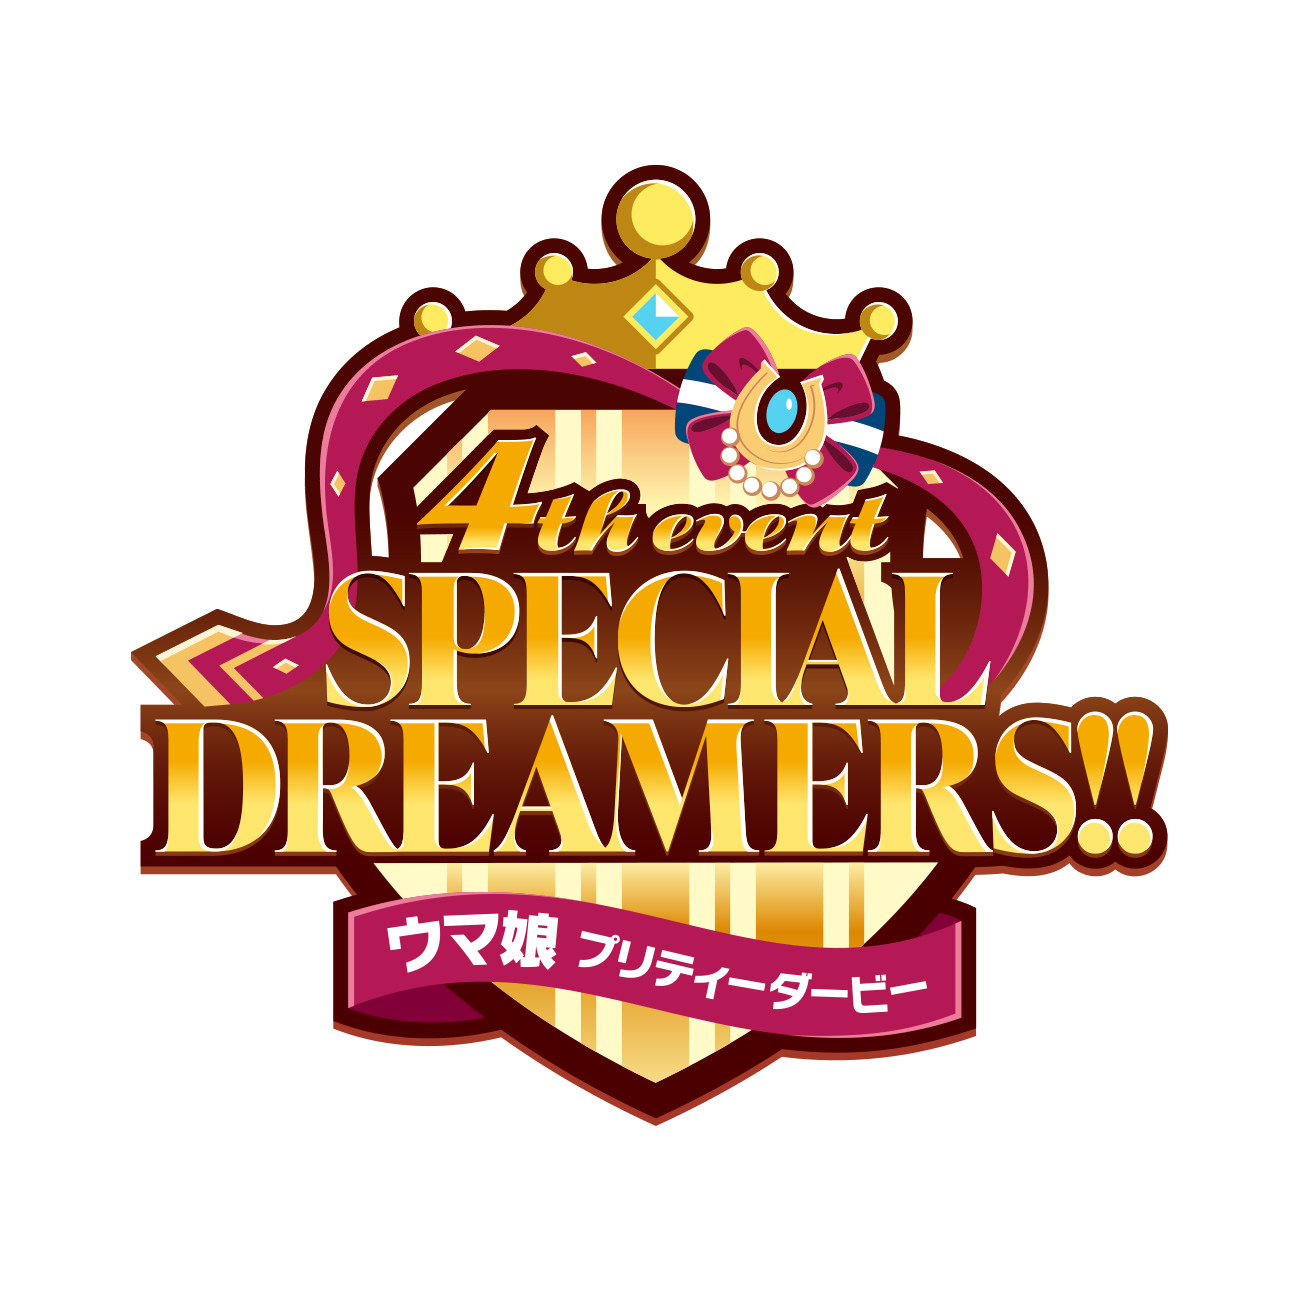 ウマ娘 プリティーダービー  4th EVENT  SPECIAL DREAMERS!!